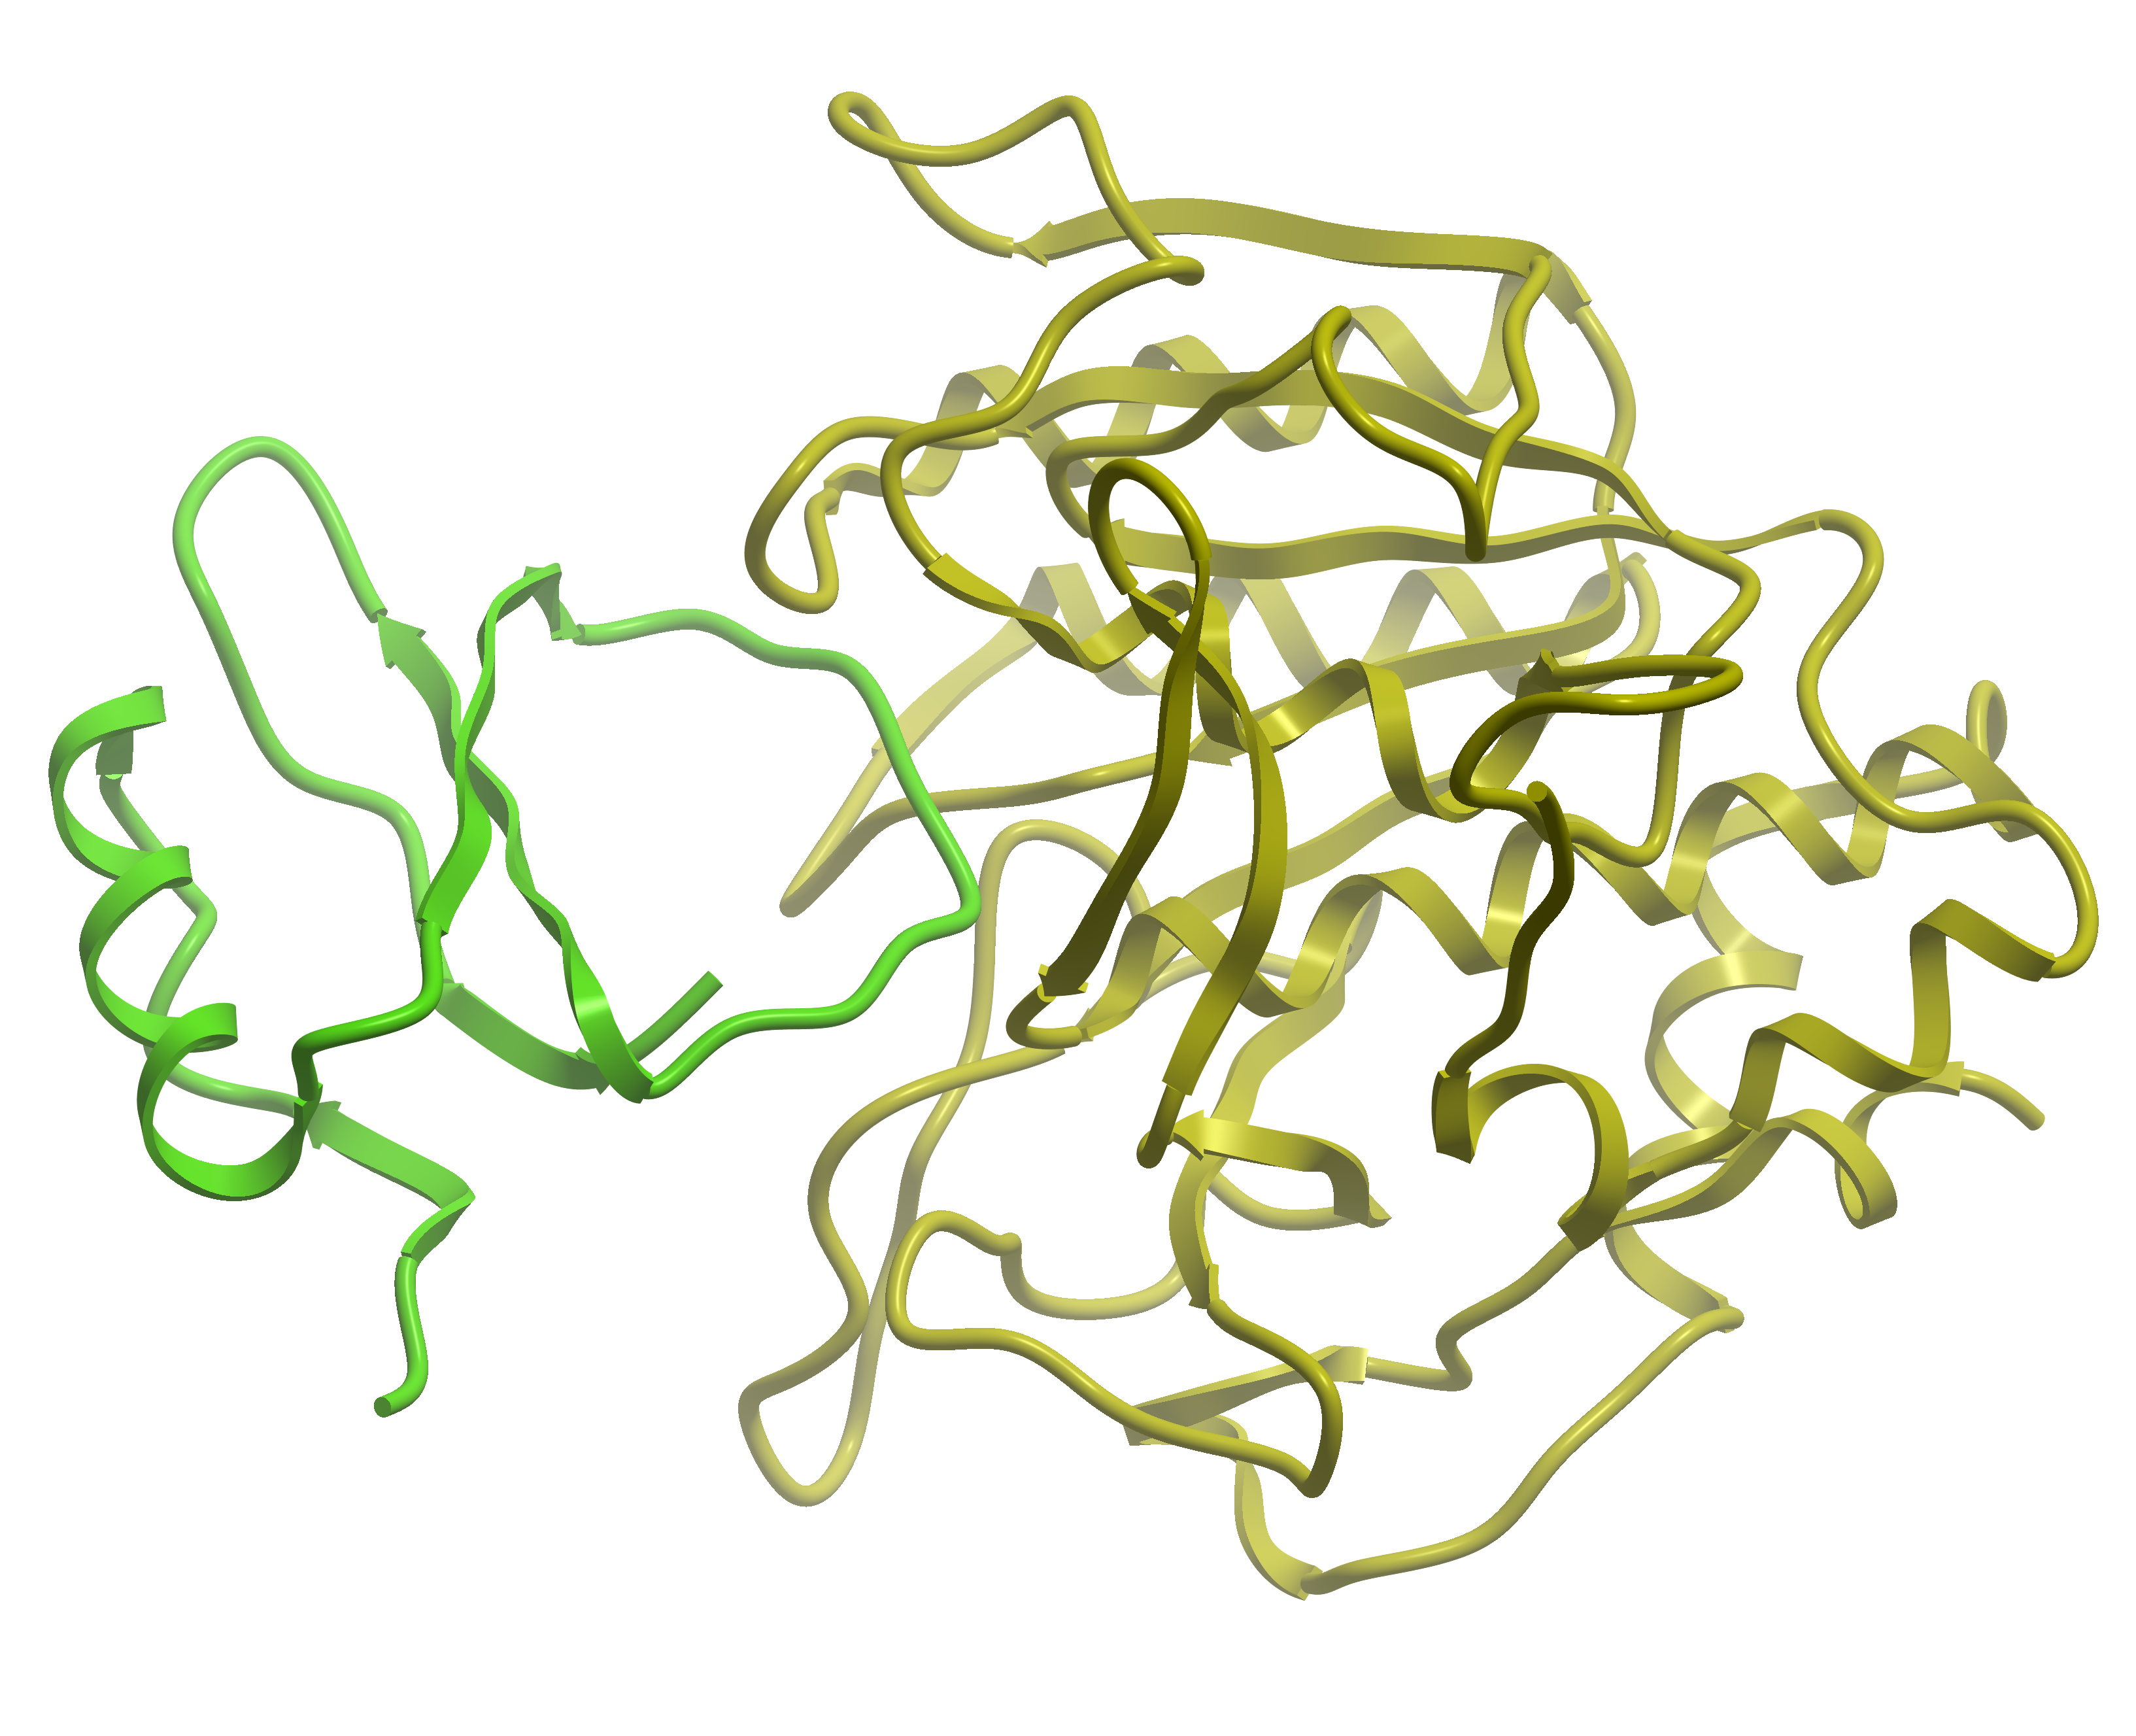 Molsoft L.L.C.: Protein Protein Docking Achievements